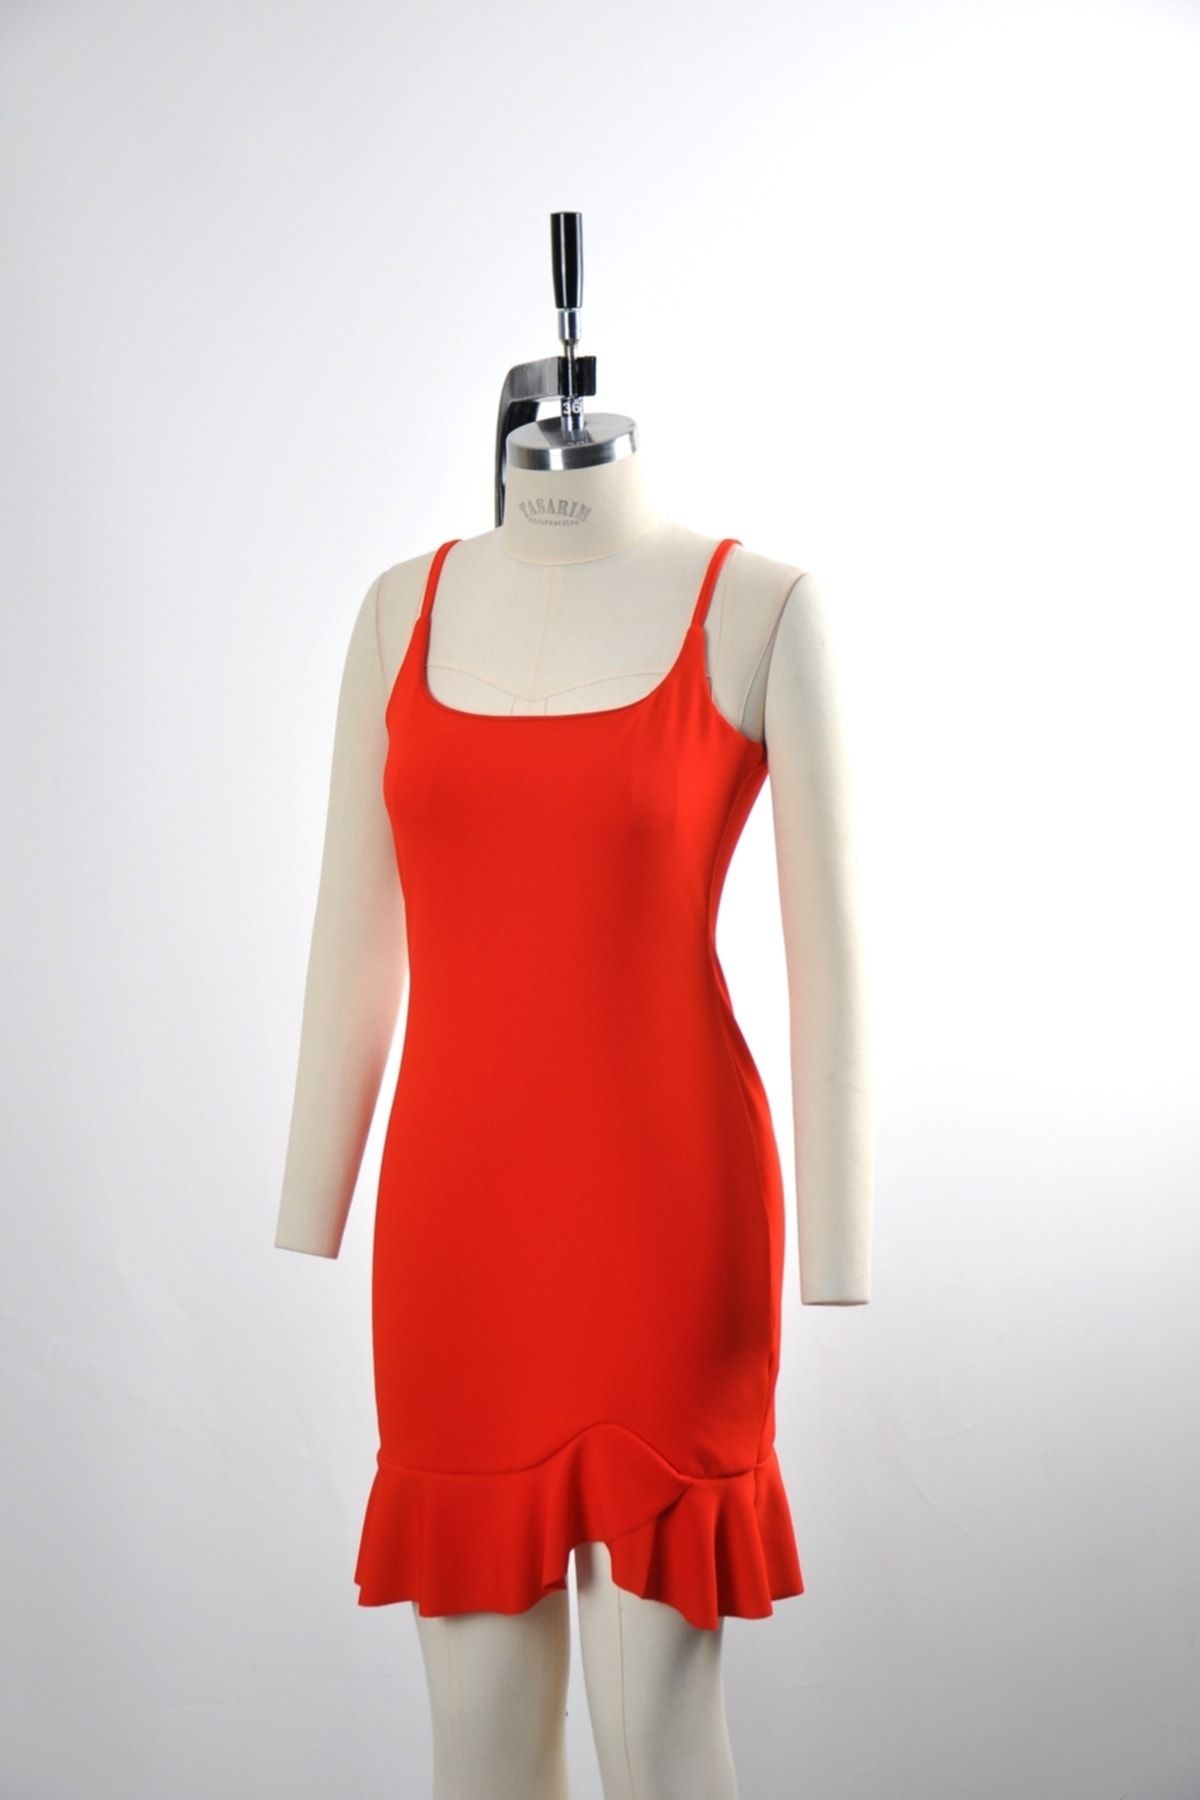 Secret Passion Lingerie Esnek Krep Kumaş Ince Askılı Etek Ucu Volan Detaylı Kırmızı Mini Elbise Gece Elbisesi